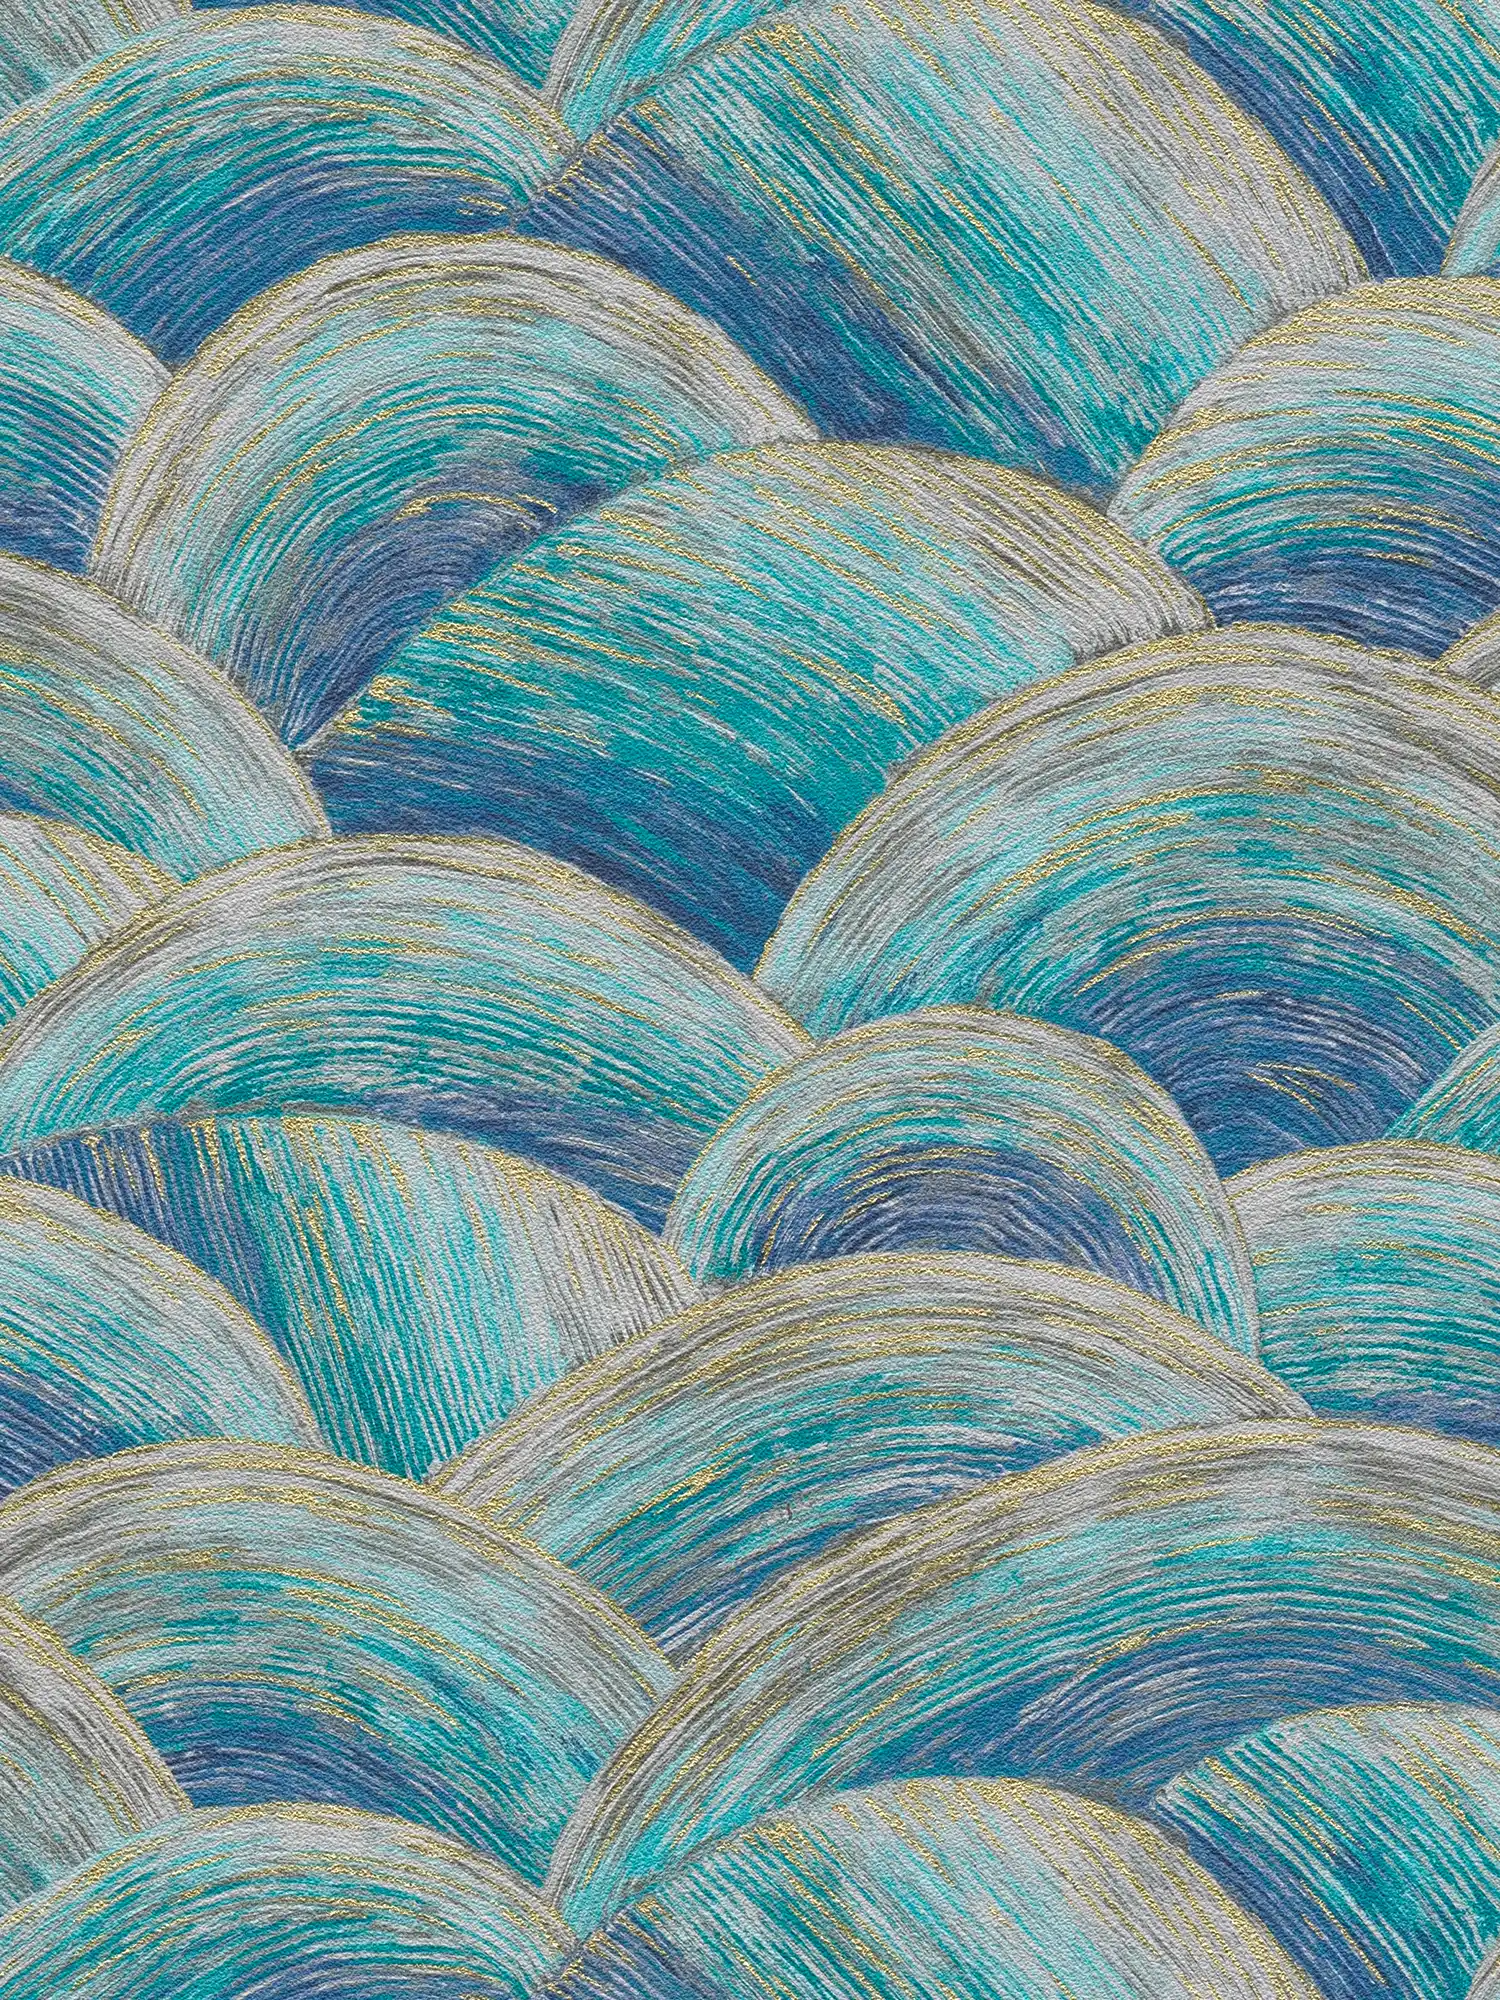 Papier peint abstrait intissé avec motif de vagues & effet brillant - bleu, turquoise, or
